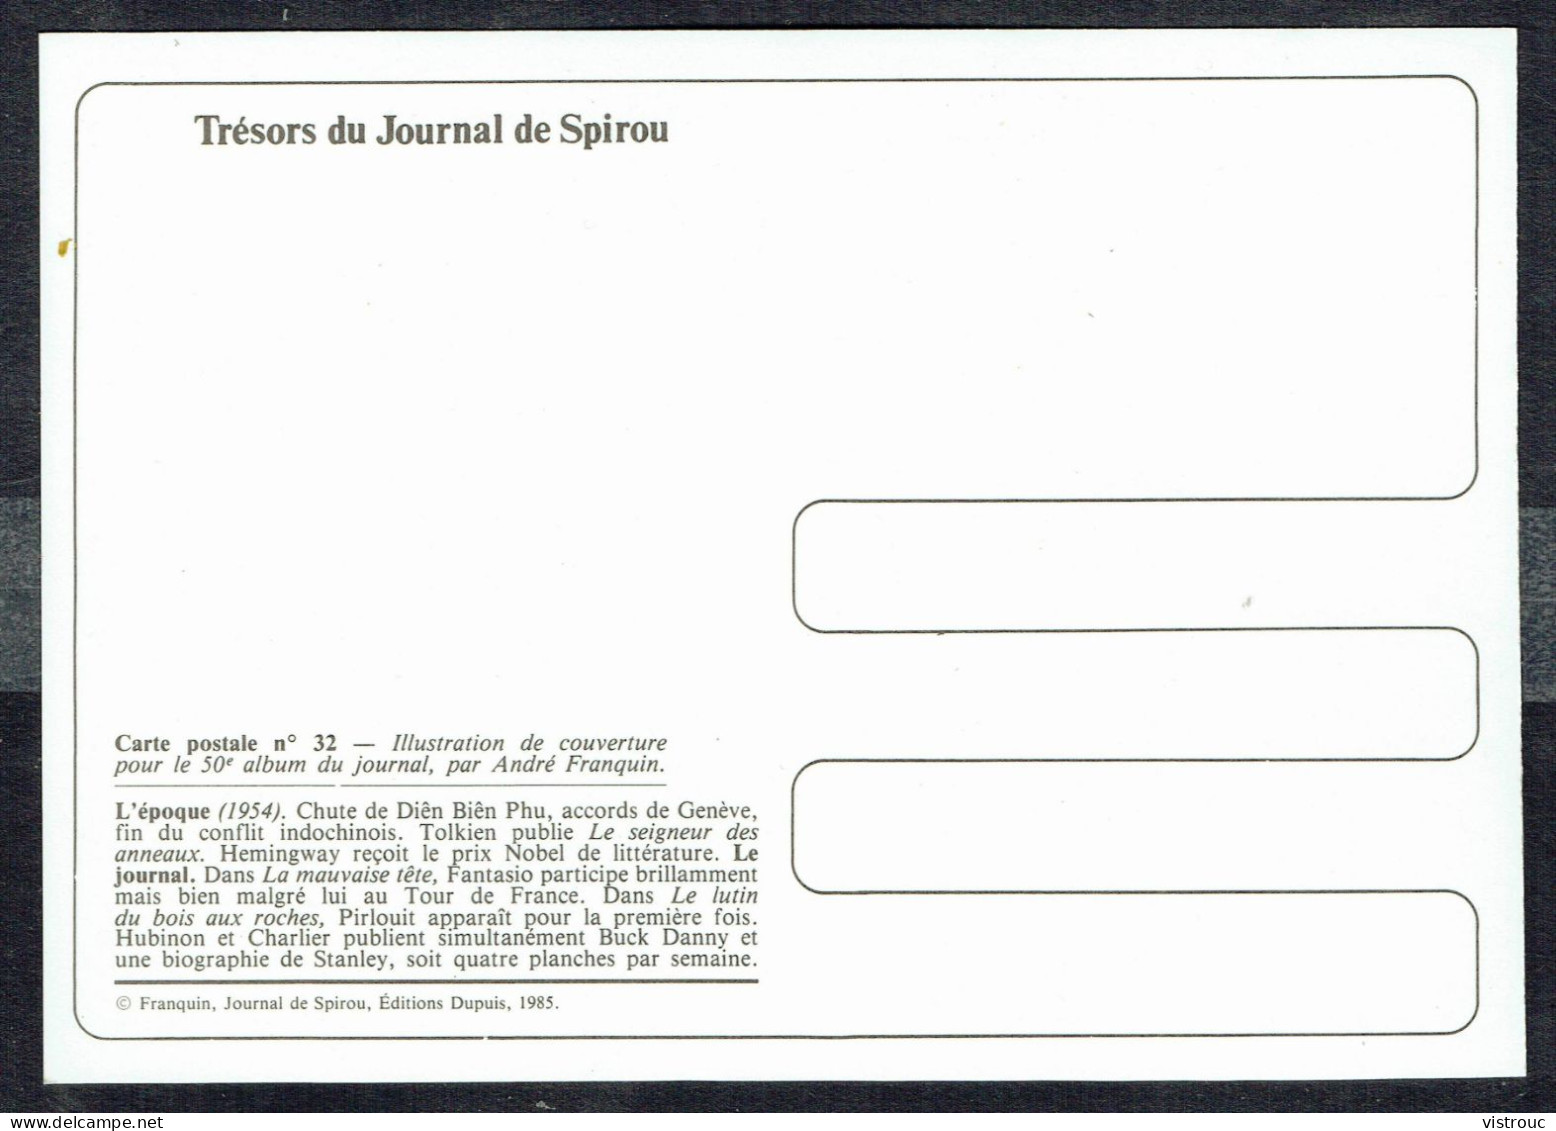 SPIROU - CP N° 32 : Illustration Couverture Album N° 50 De FRANQUIN - Non Circulé - Not Circulated - Ed. DUPUIS - 1985. - Stripverhalen